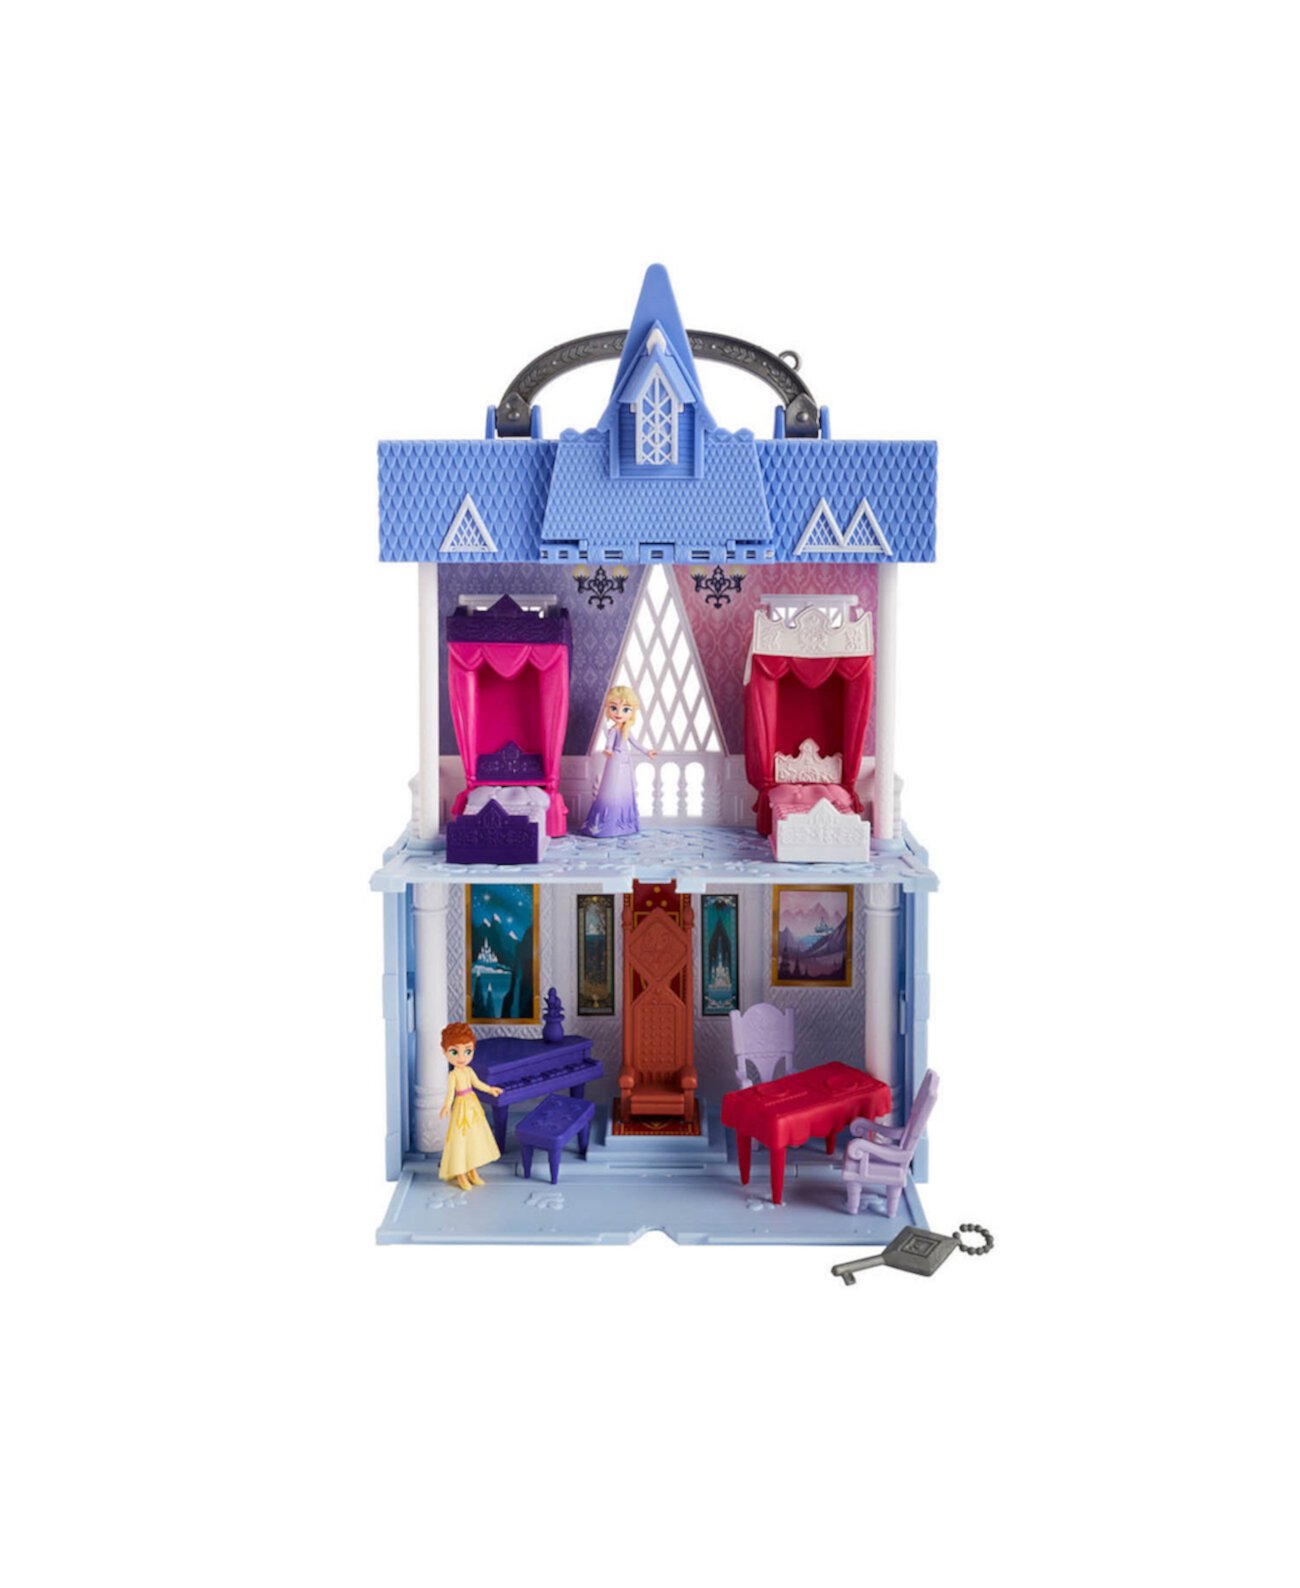 Набор для игр Disney Movie Pop Adventures Arendelle Castle с ручкой, в том числе кукла Эльза, кукла Анна и 7 аксессуаров Frozen